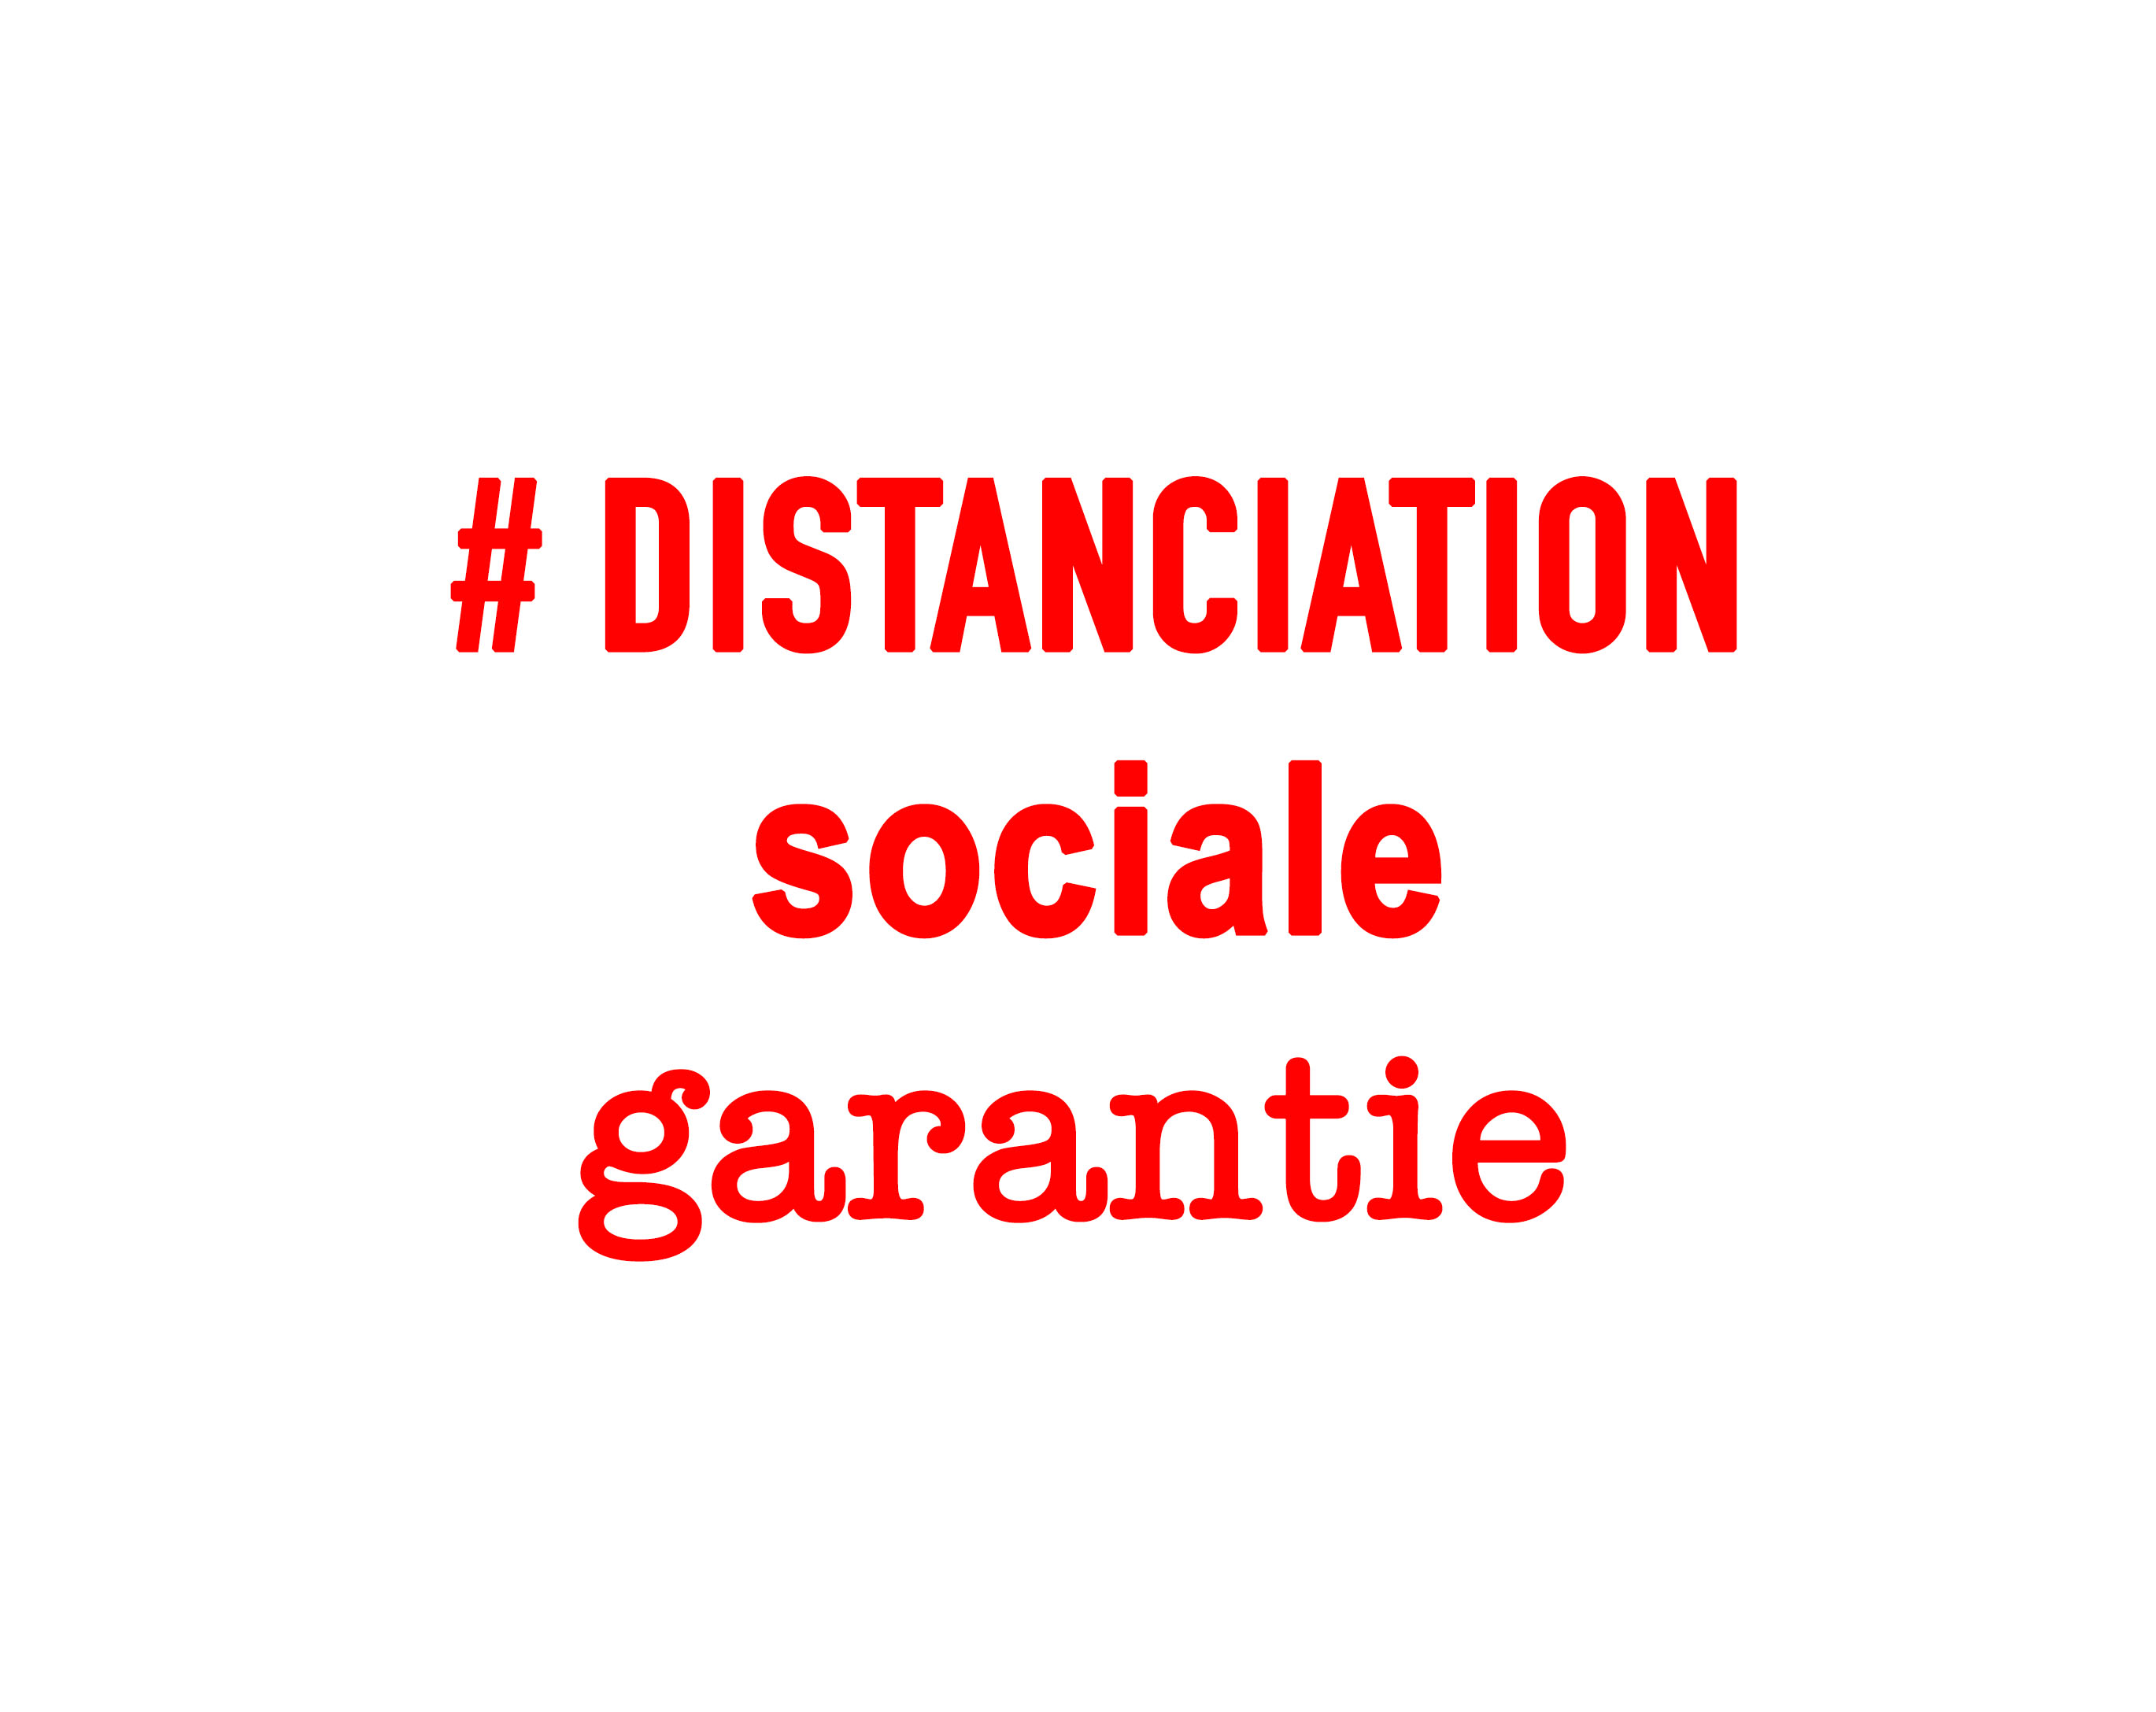 DISTANCIATION SOCIALE GARANTIE POAA2020